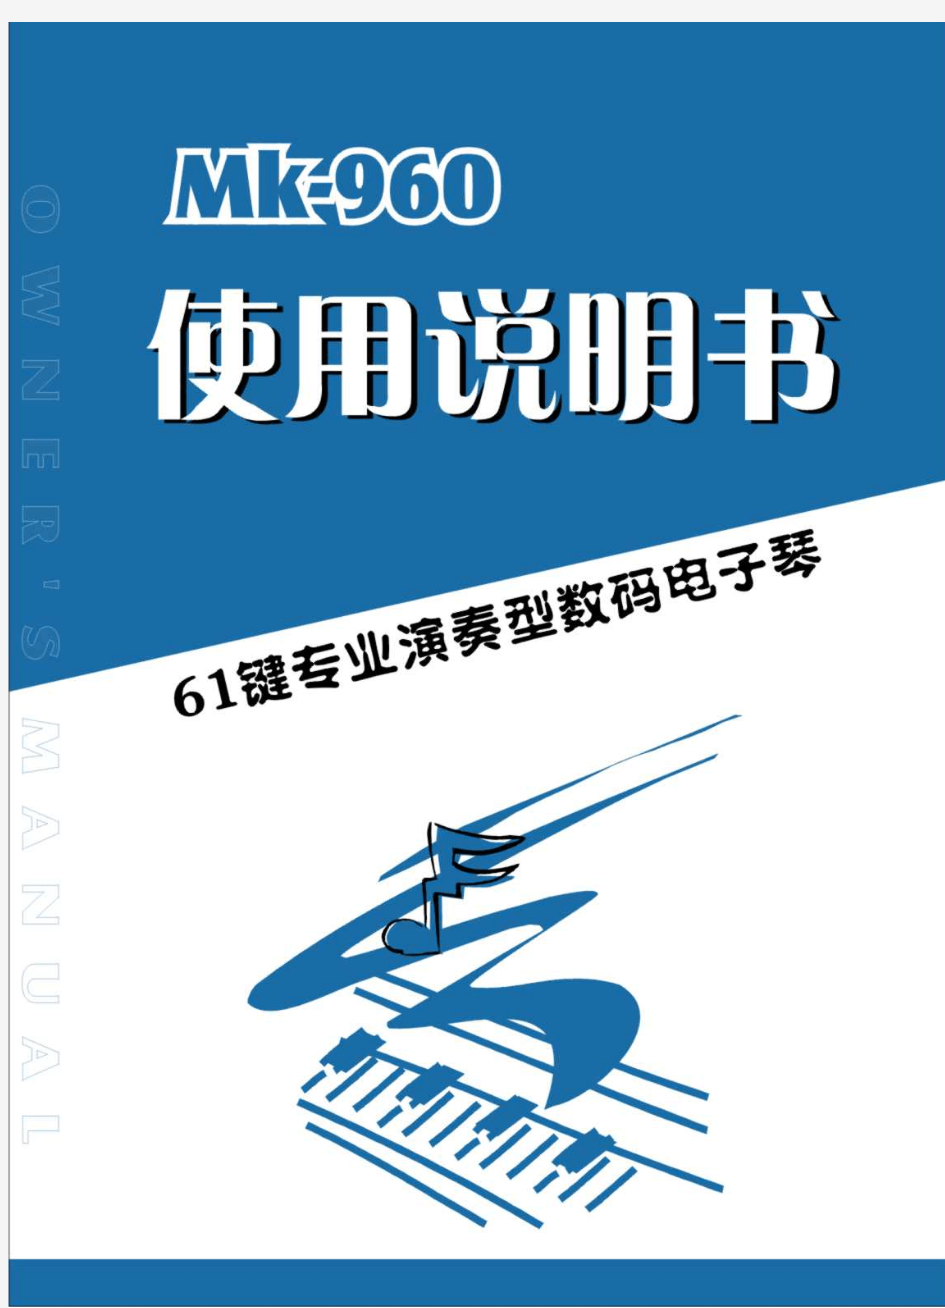 美科MK-960电子琴说明书 中文版